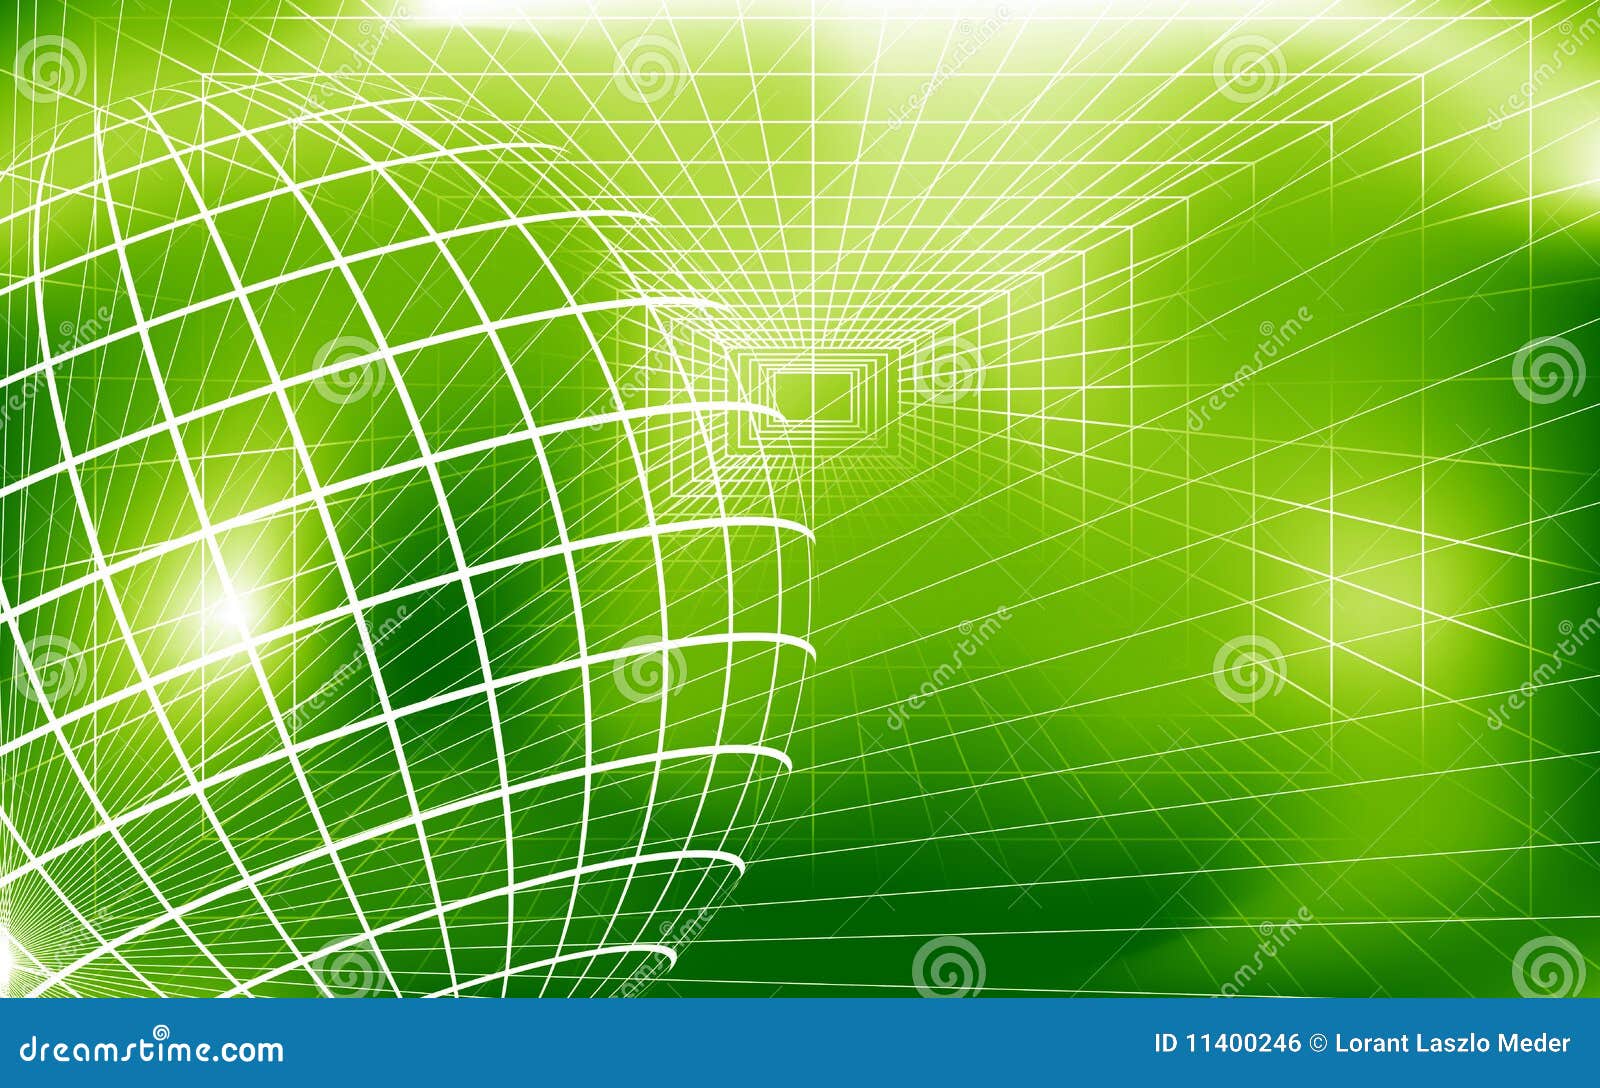 Hình nền kỹ thuật số xanh: Sắc xanh tươi tắn sẽ đại diện cho sự tươi mới và sự phát triển. Hãy truy cập ngay để chiêm ngưỡng những hình nền kỹ thuật số xanh đẹp mắt và tạo động lực cho công việc.